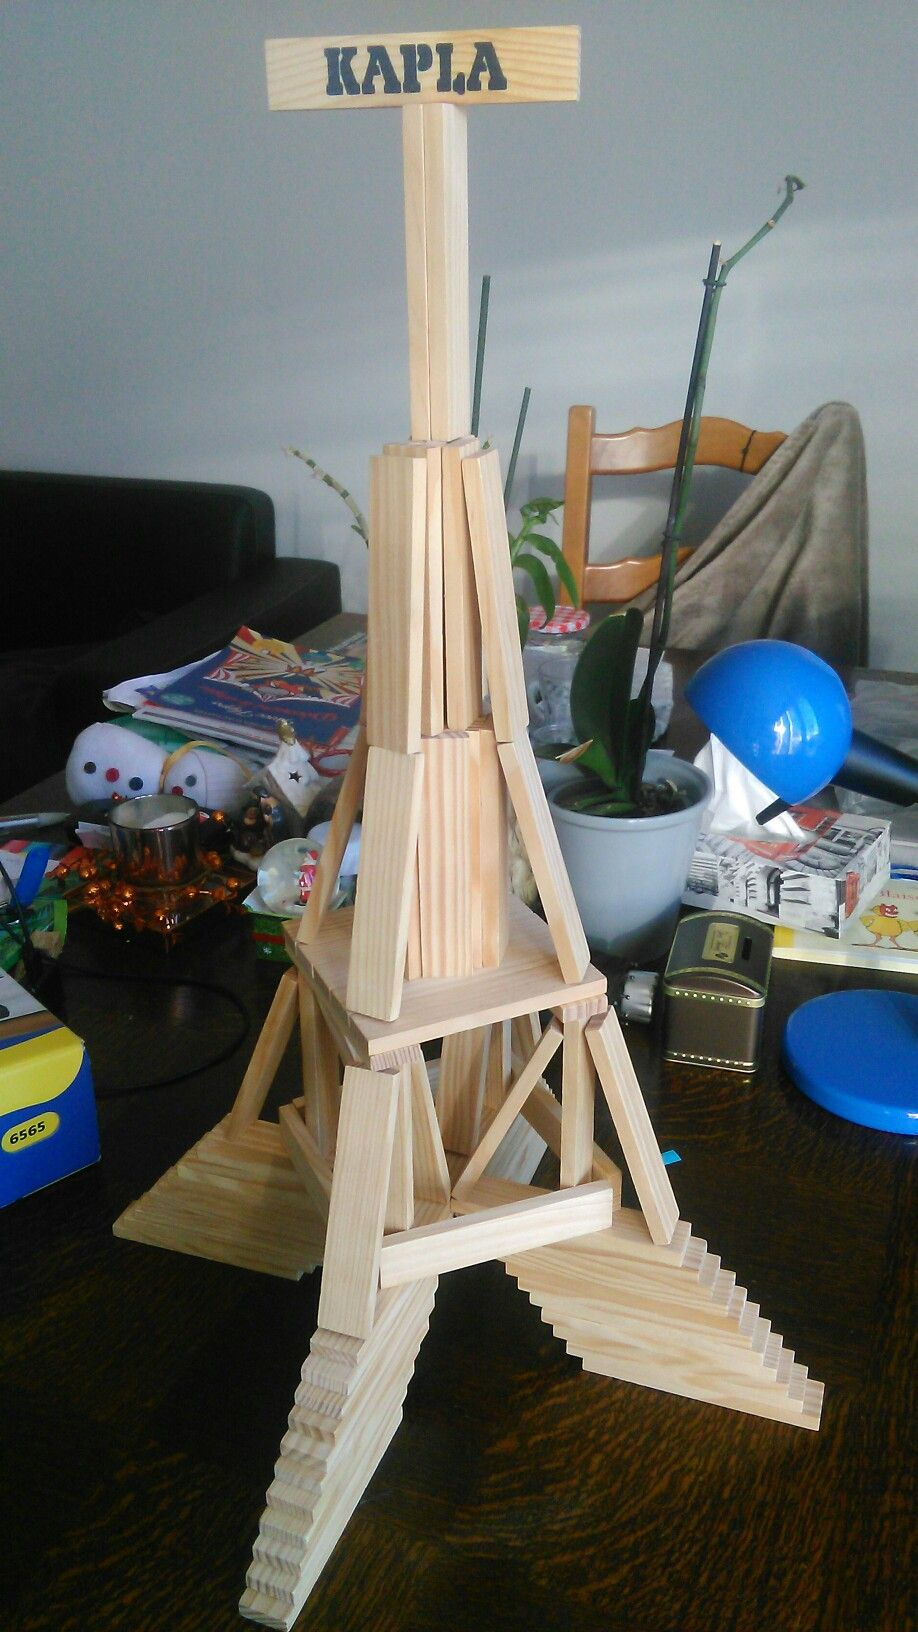 Tour Eiffel (Avec Images) | Kapla, Idée De Jeux, Kappla concernant Construction Facile Kapla